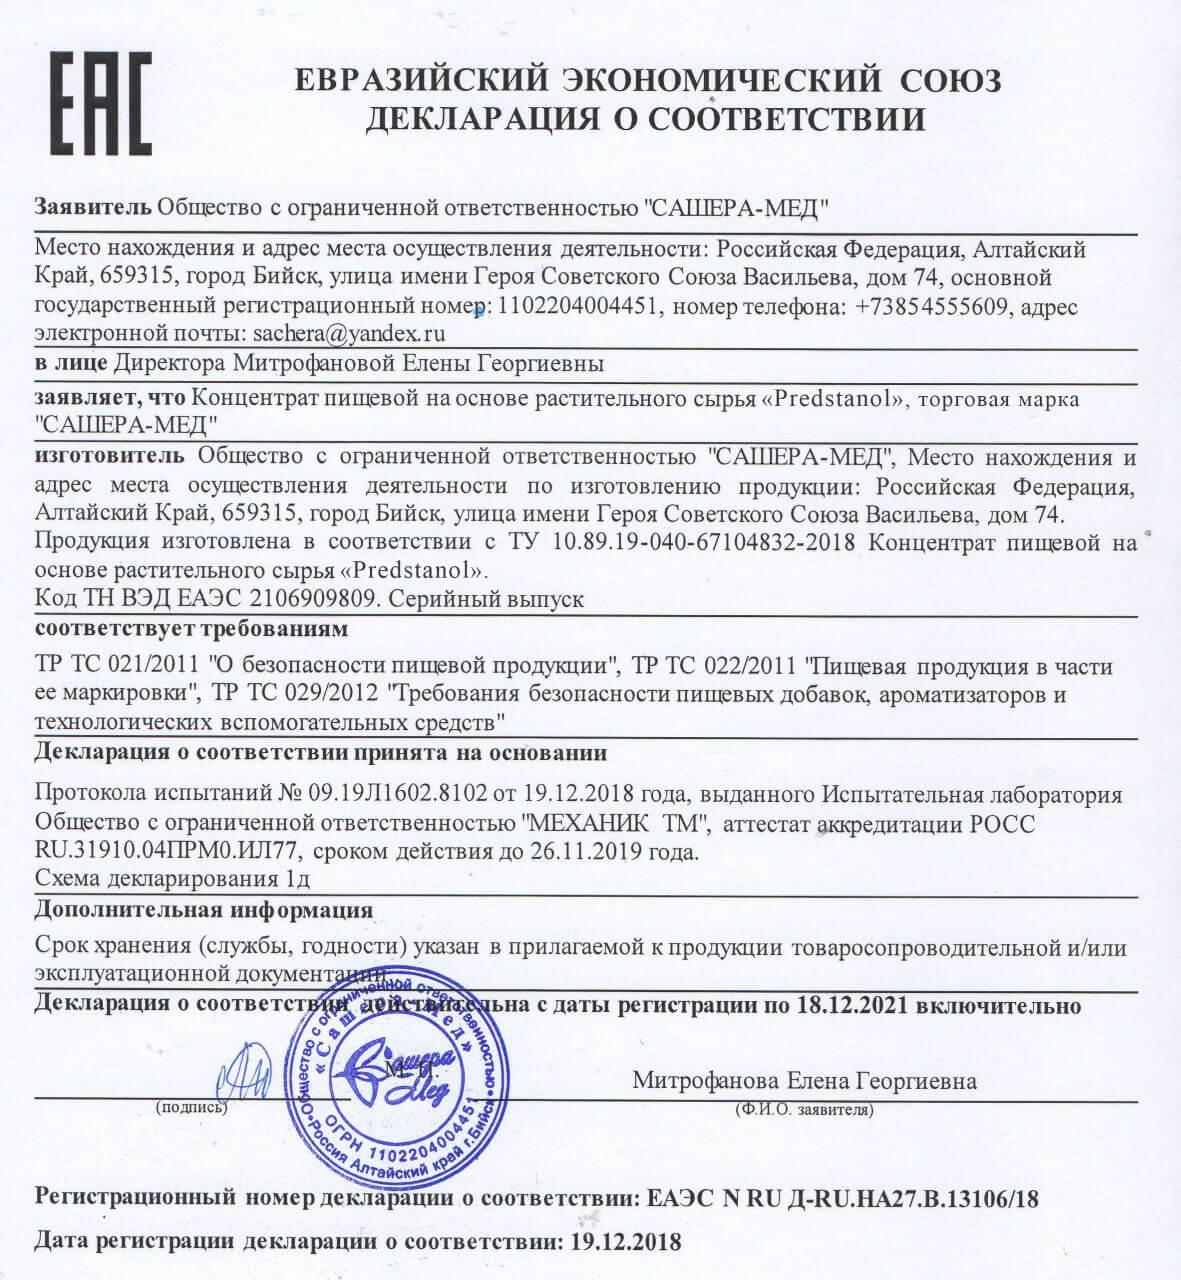 Сертификат на предстанол в Подольске